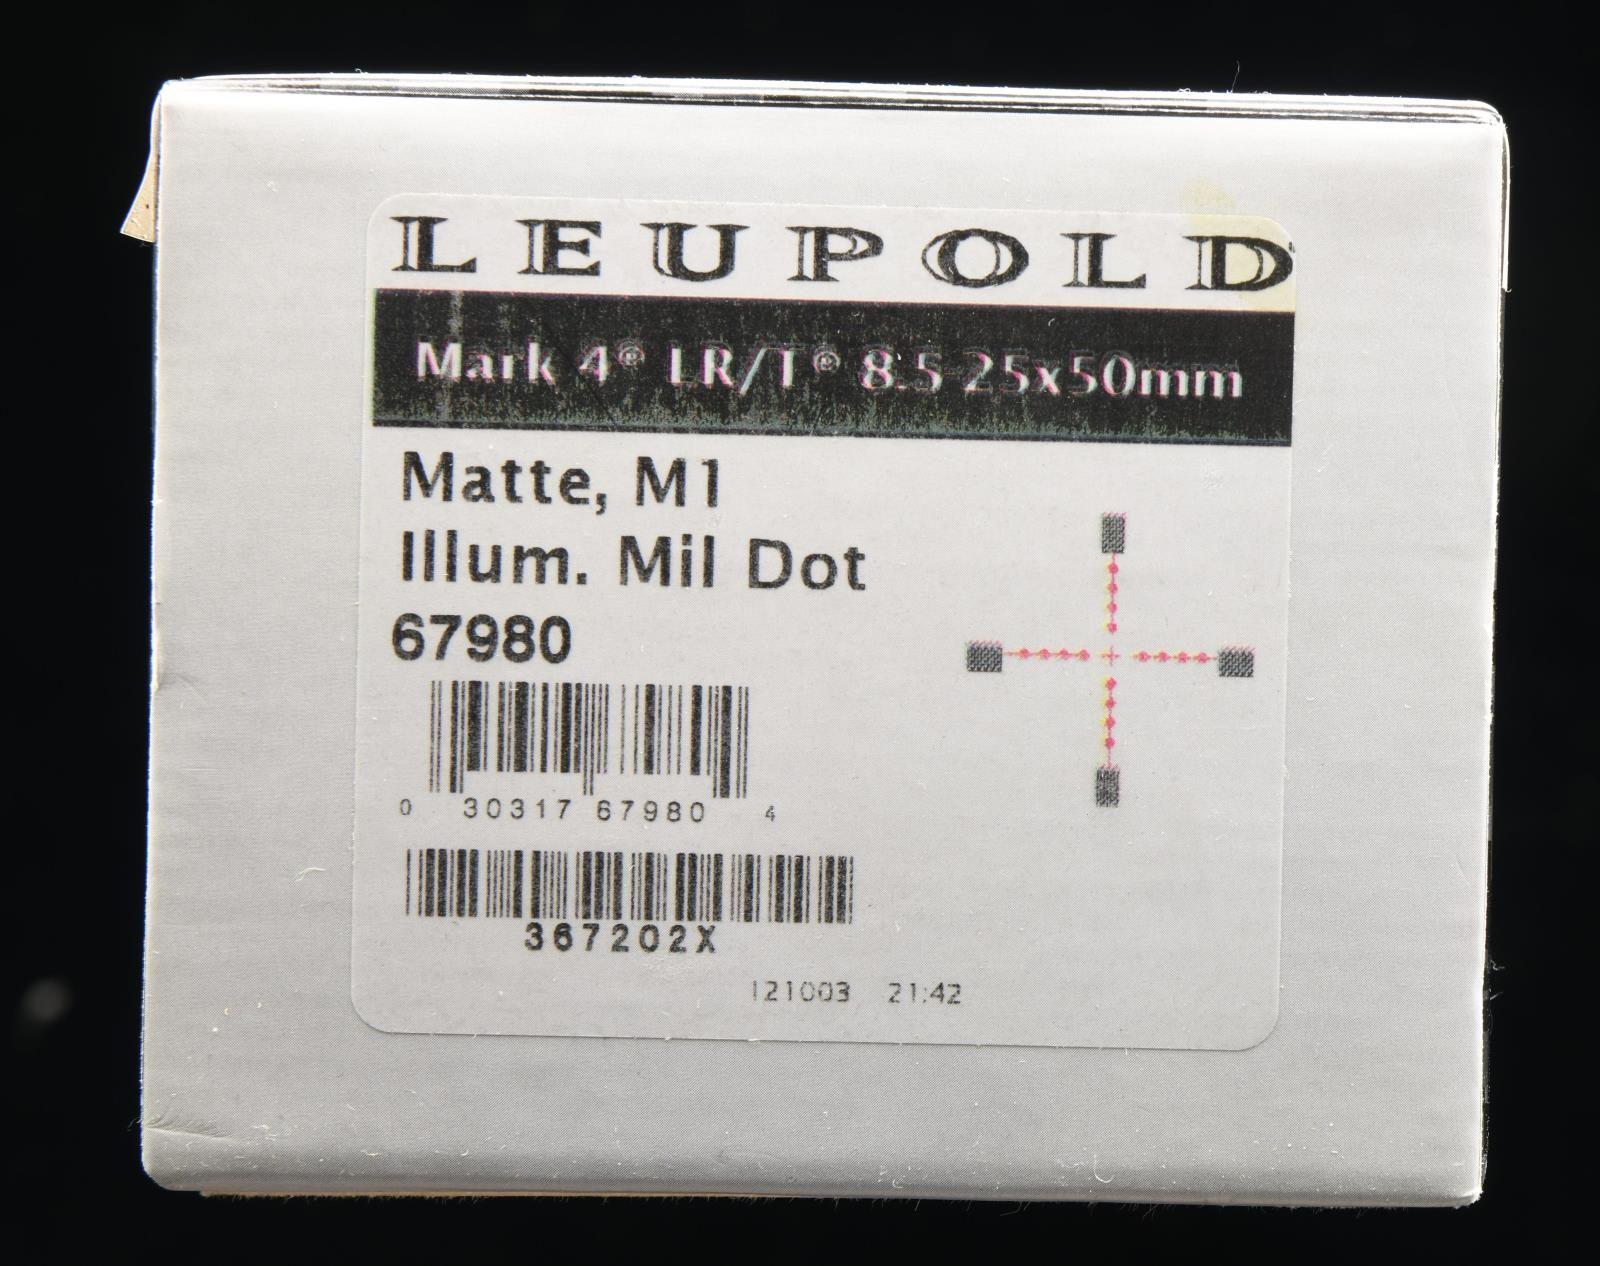 LEUPOLD MARK 4 LR/T 8.5-25x50MM ILLUM. MIL DOT